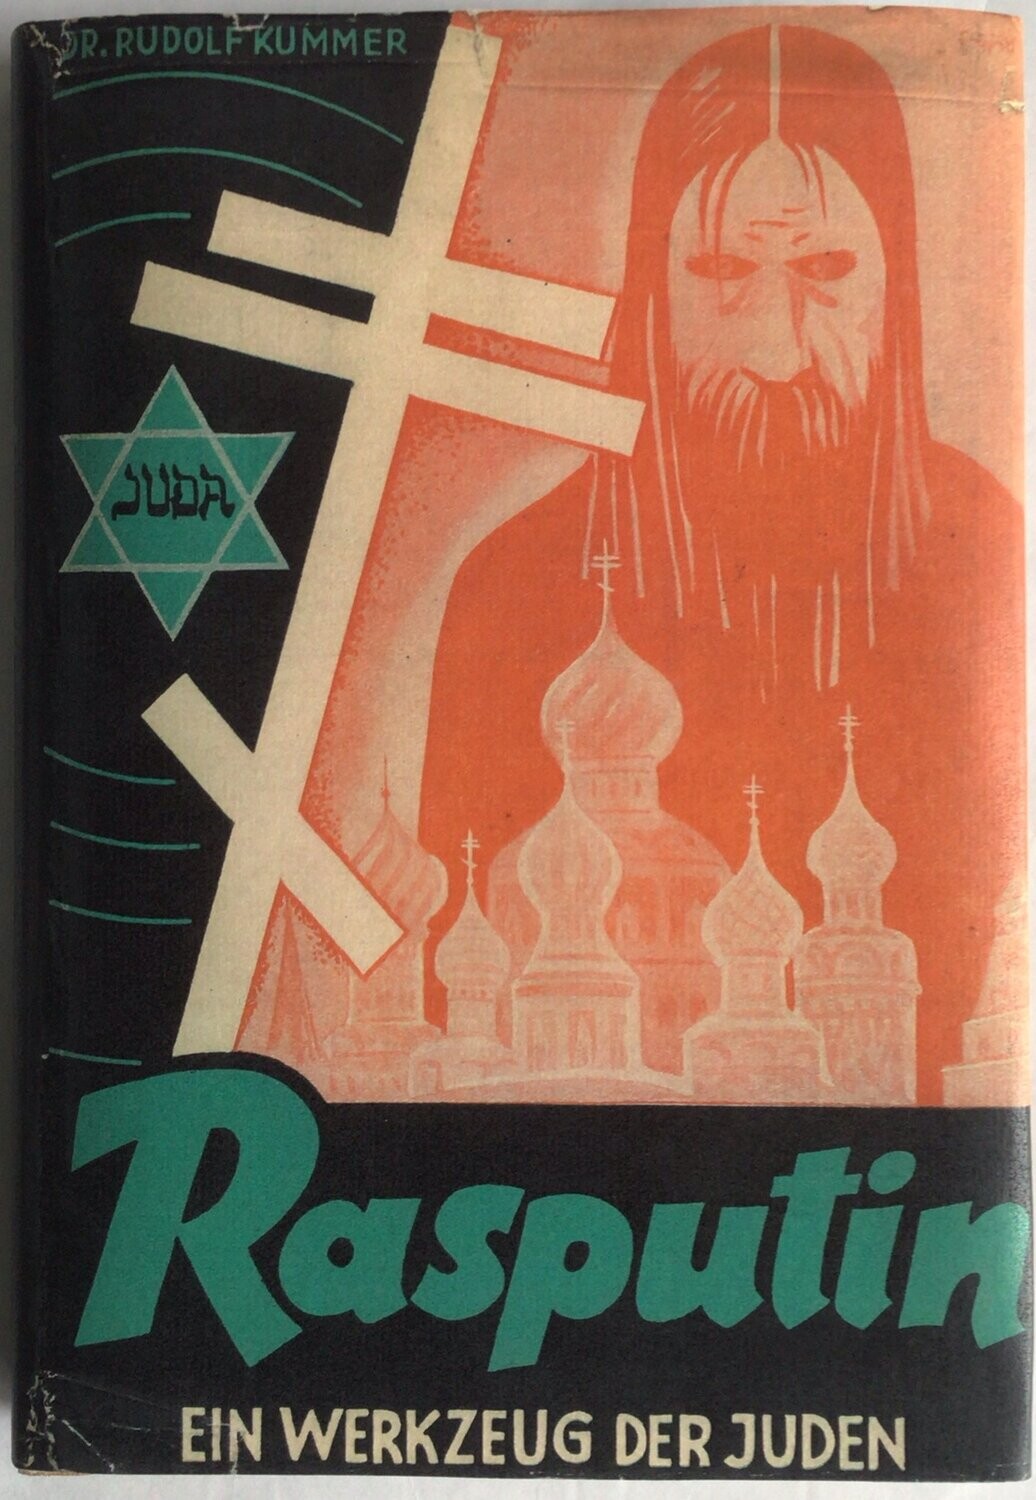 Kummer: Rasputin - Ein Werkzeug der Juden - Halbleinenausgabe aus 1941 (9. Auflage)mit Schutzumschlag (Kopie) aus dem Stürmer-Verlag